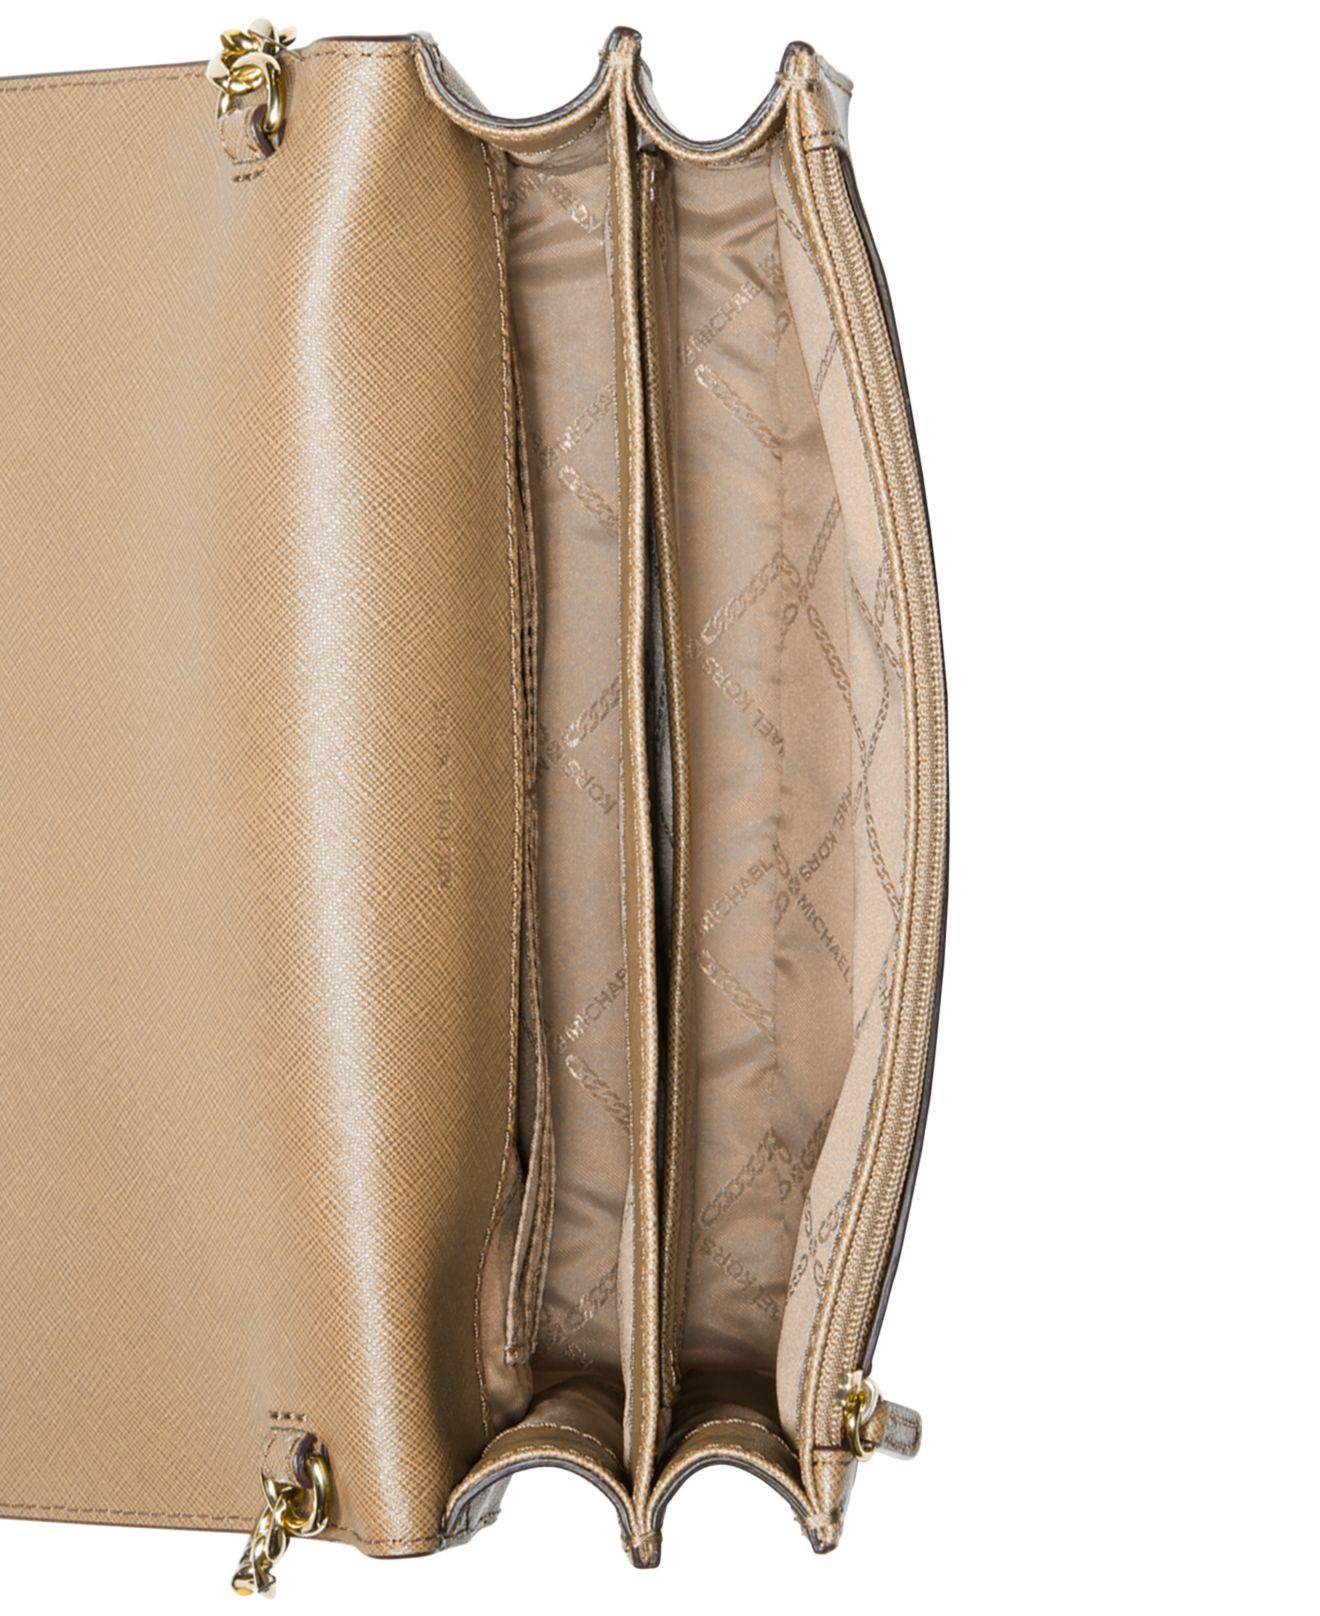 Michael Kors Daniela Large Gusset Crossbody Leather Bag In Oregano